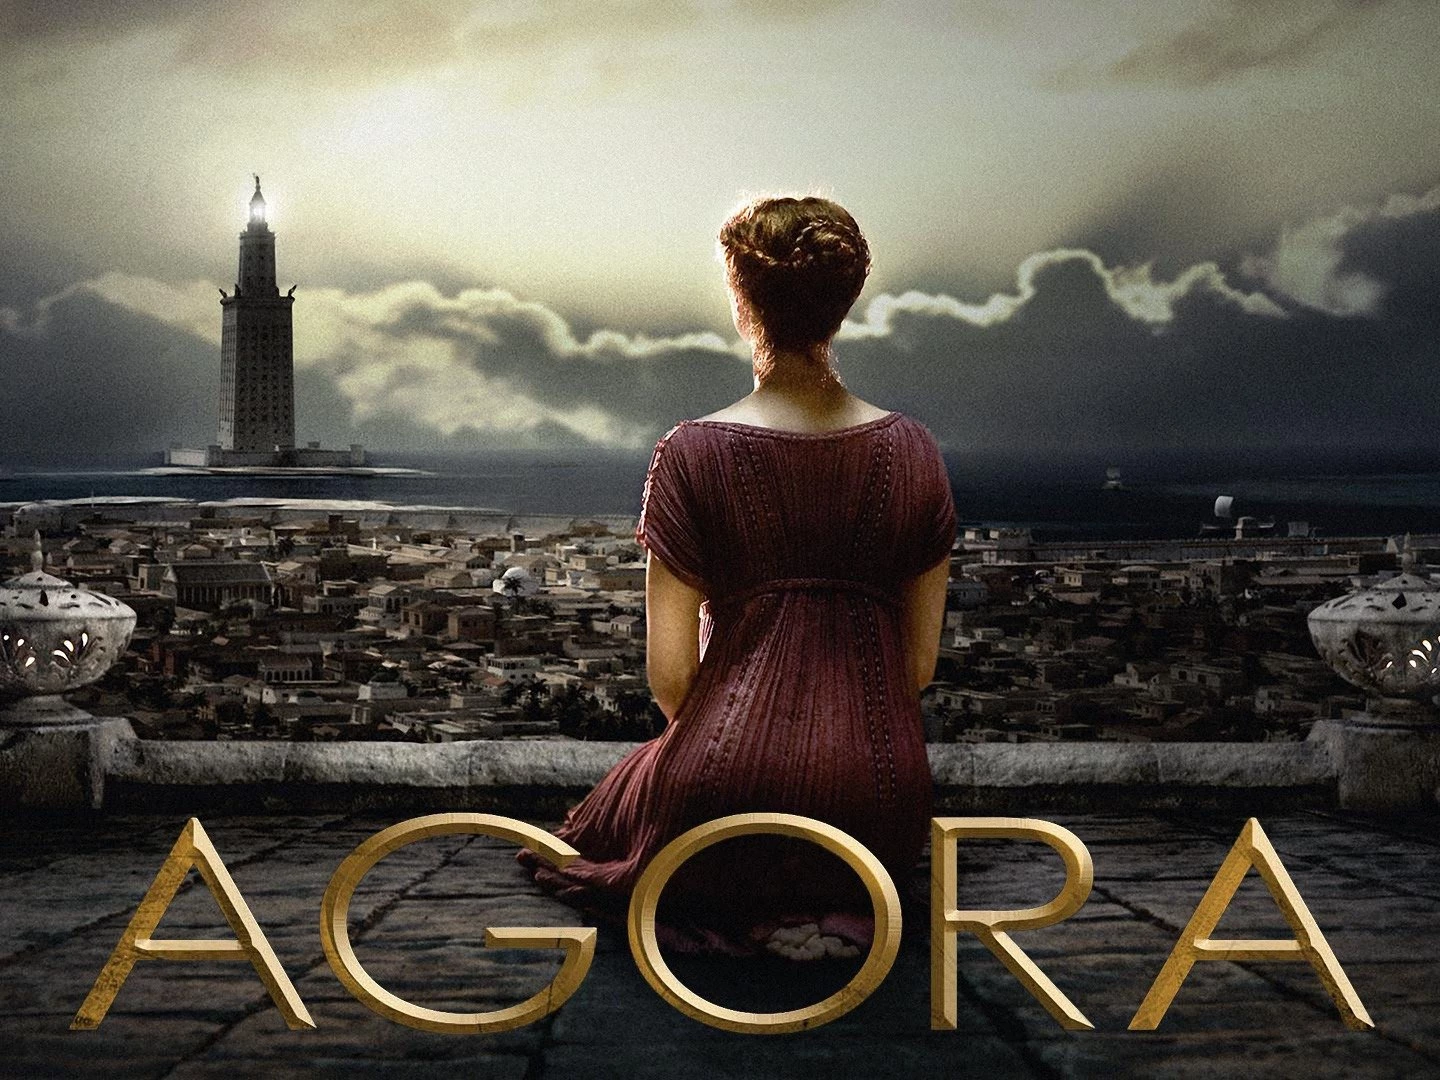 Agora (2009) - Movies like Apocalypto